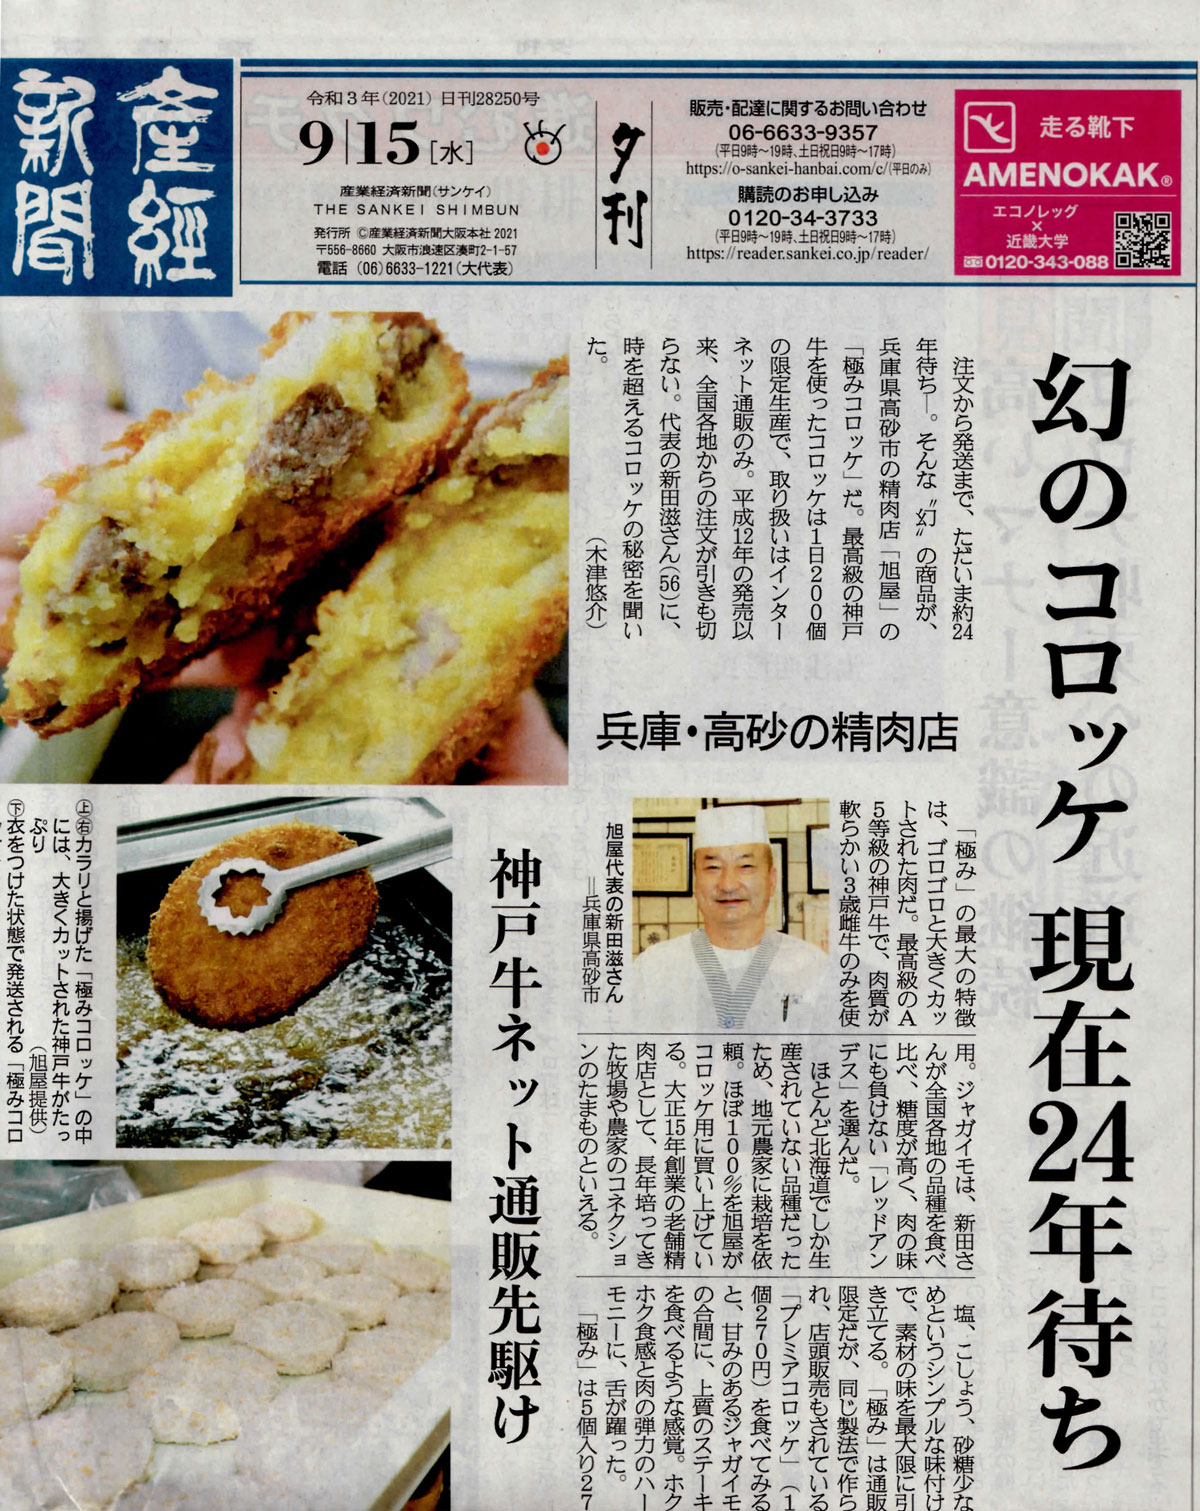 産経新聞様に極みコロッケの取材をしていただきました | 神戸牛専門店